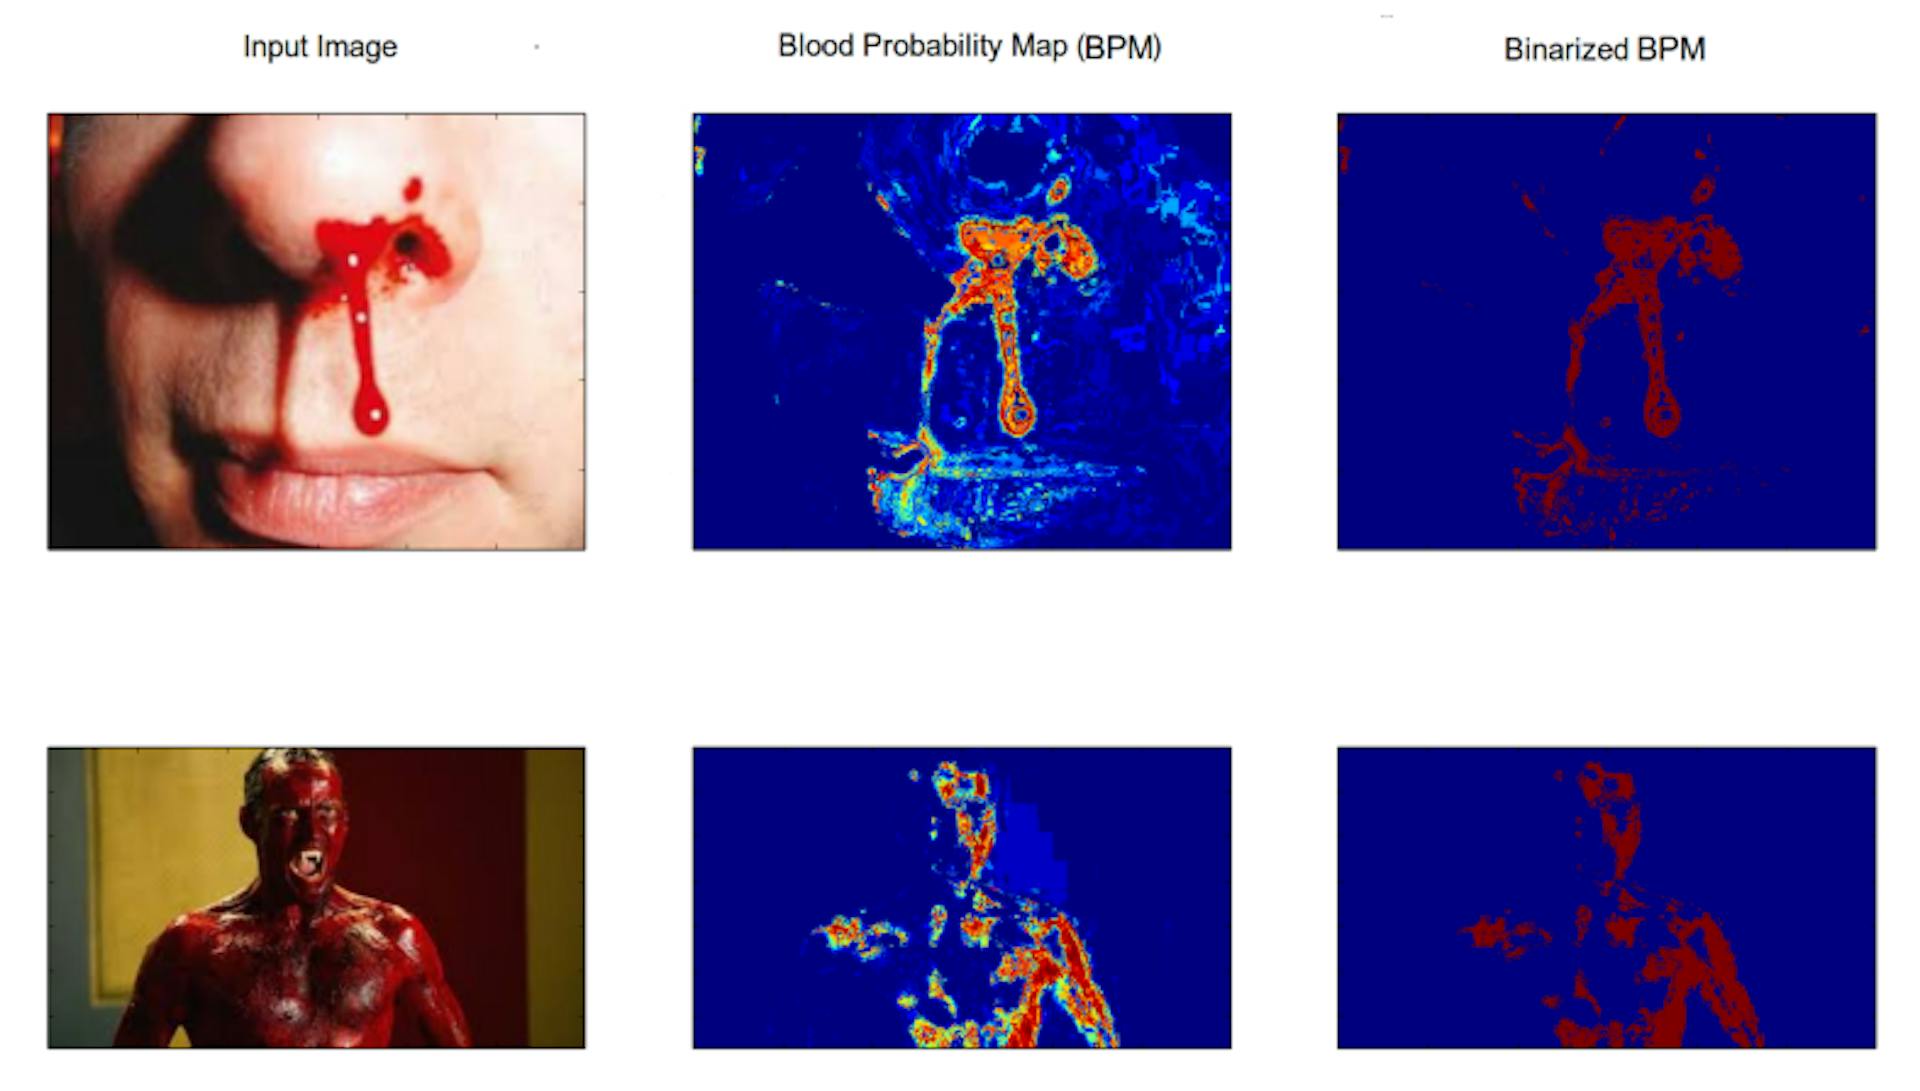 図 3.4: 生成された血液モデルの血液検出のパフォーマンスを示す図。最初の列には入力画像、2 番目の列には血液確率マップ、最後の列には 2 値化された血液確率マップがあります。